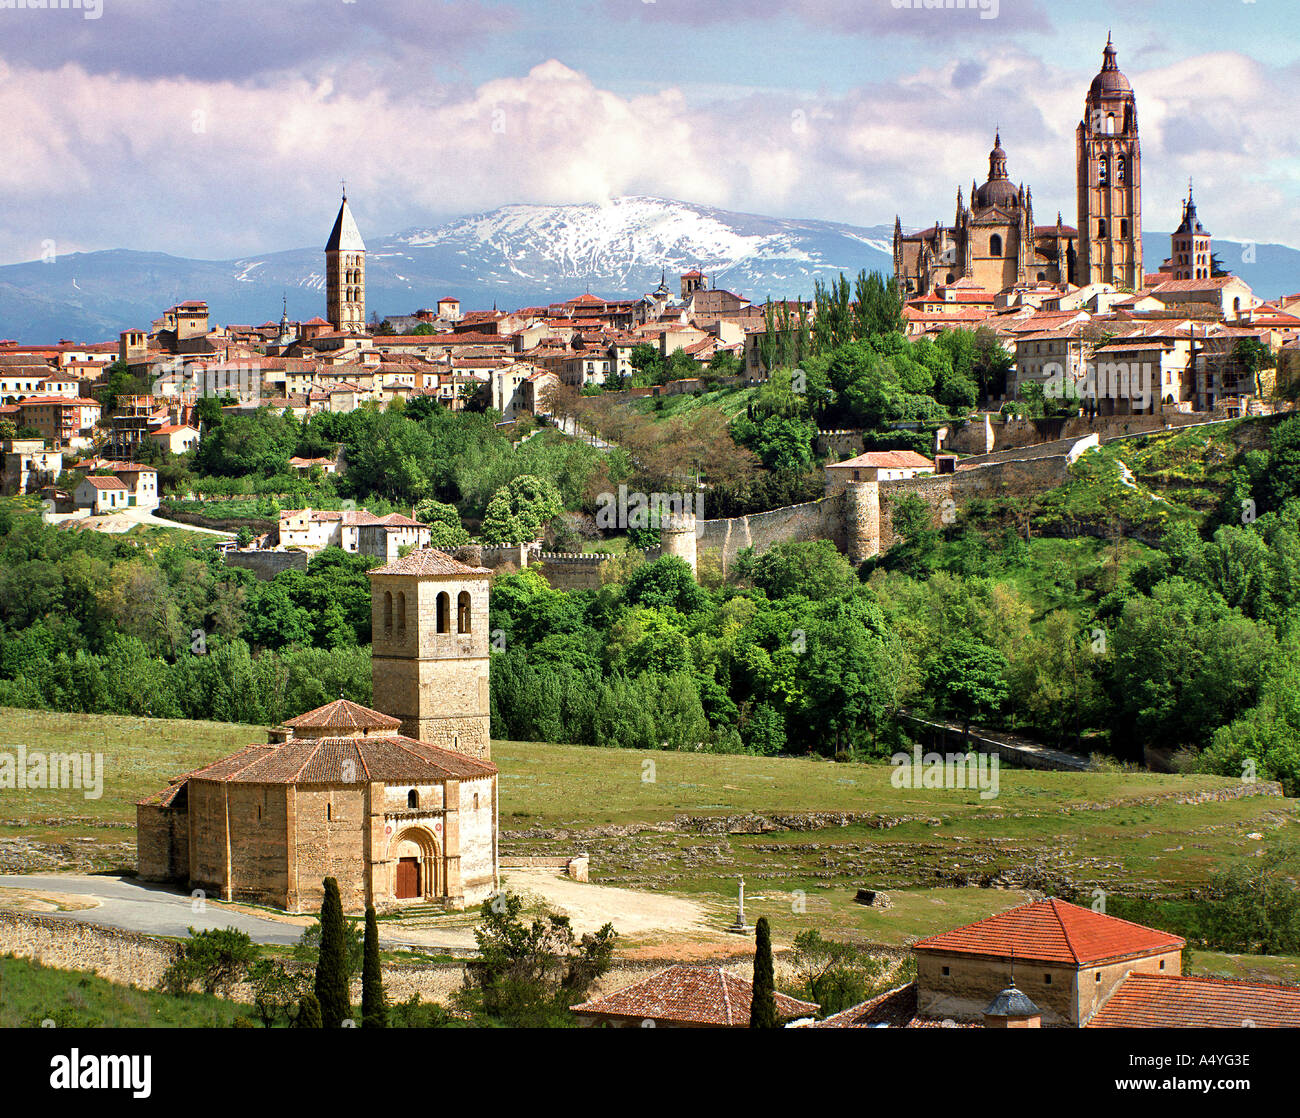 ES - CASTILE: Historic Alcazar Castle above Segovia Stock Photo